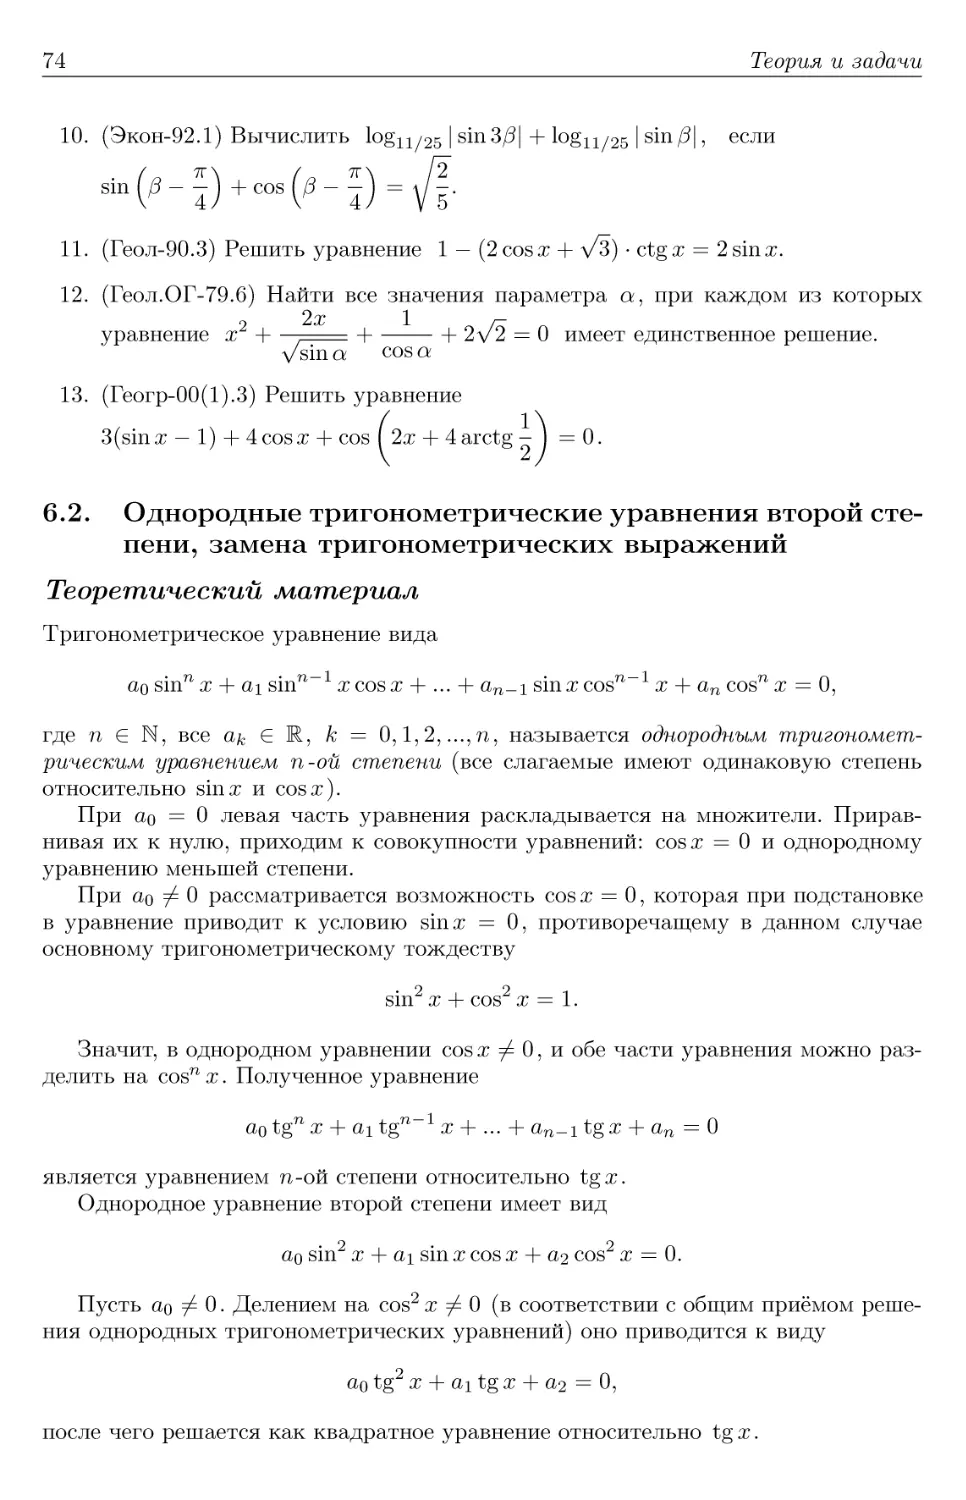 6.2. Однородные тригонометрические уравнения второй степени, замена тригонометрических выражений